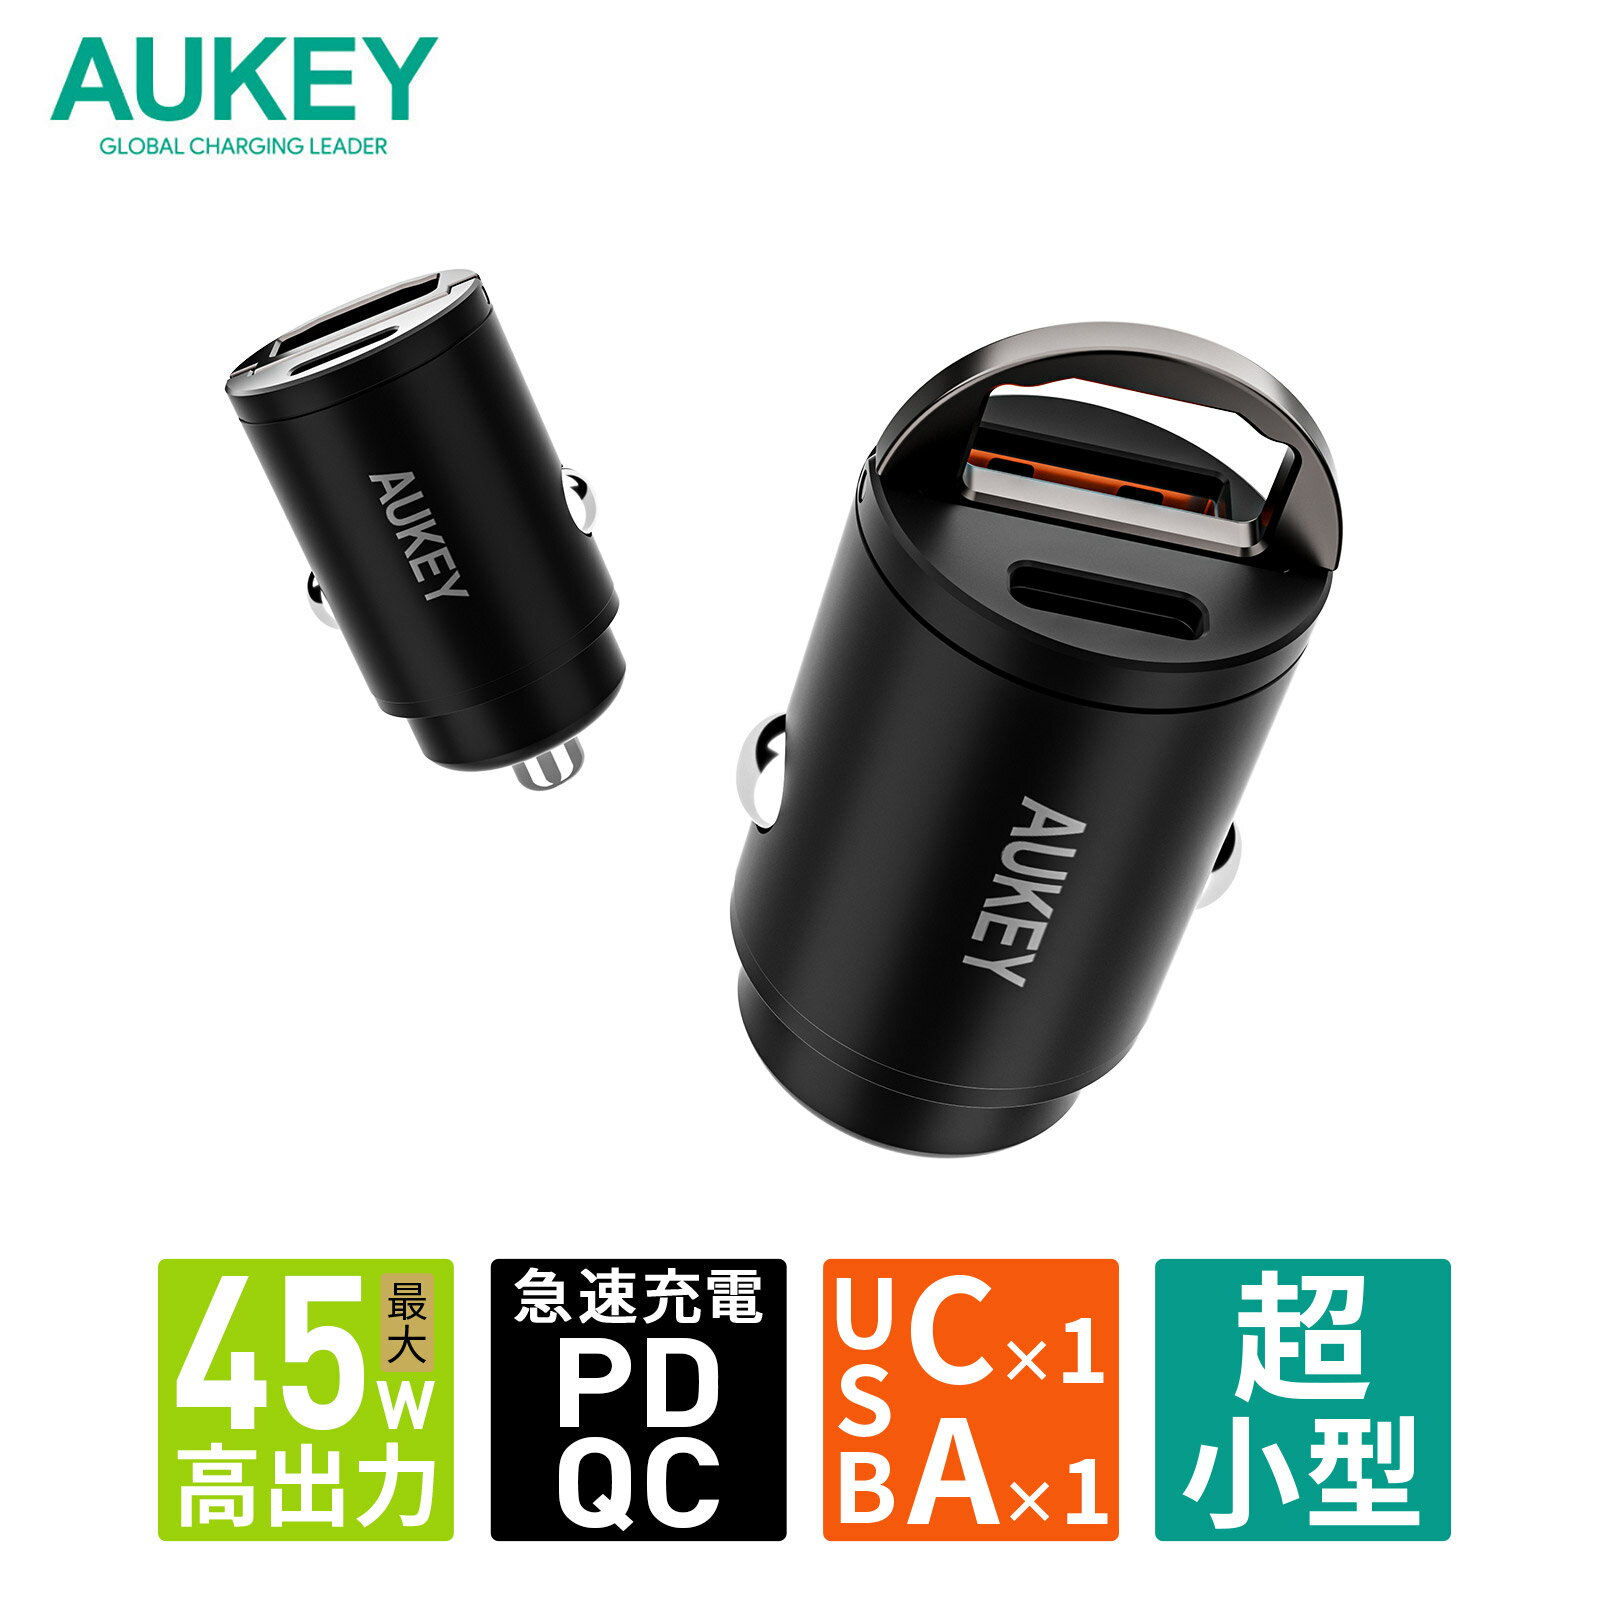 カーチャージャー JAPAN AVE.(ジャパンアベニュー) Quick Charge 3.0 搭載 増設 2連 急速 USB 急速充電 Type-C 120W/3ポート / 2ソケット / 12-24V 各種 iPhone/Androi